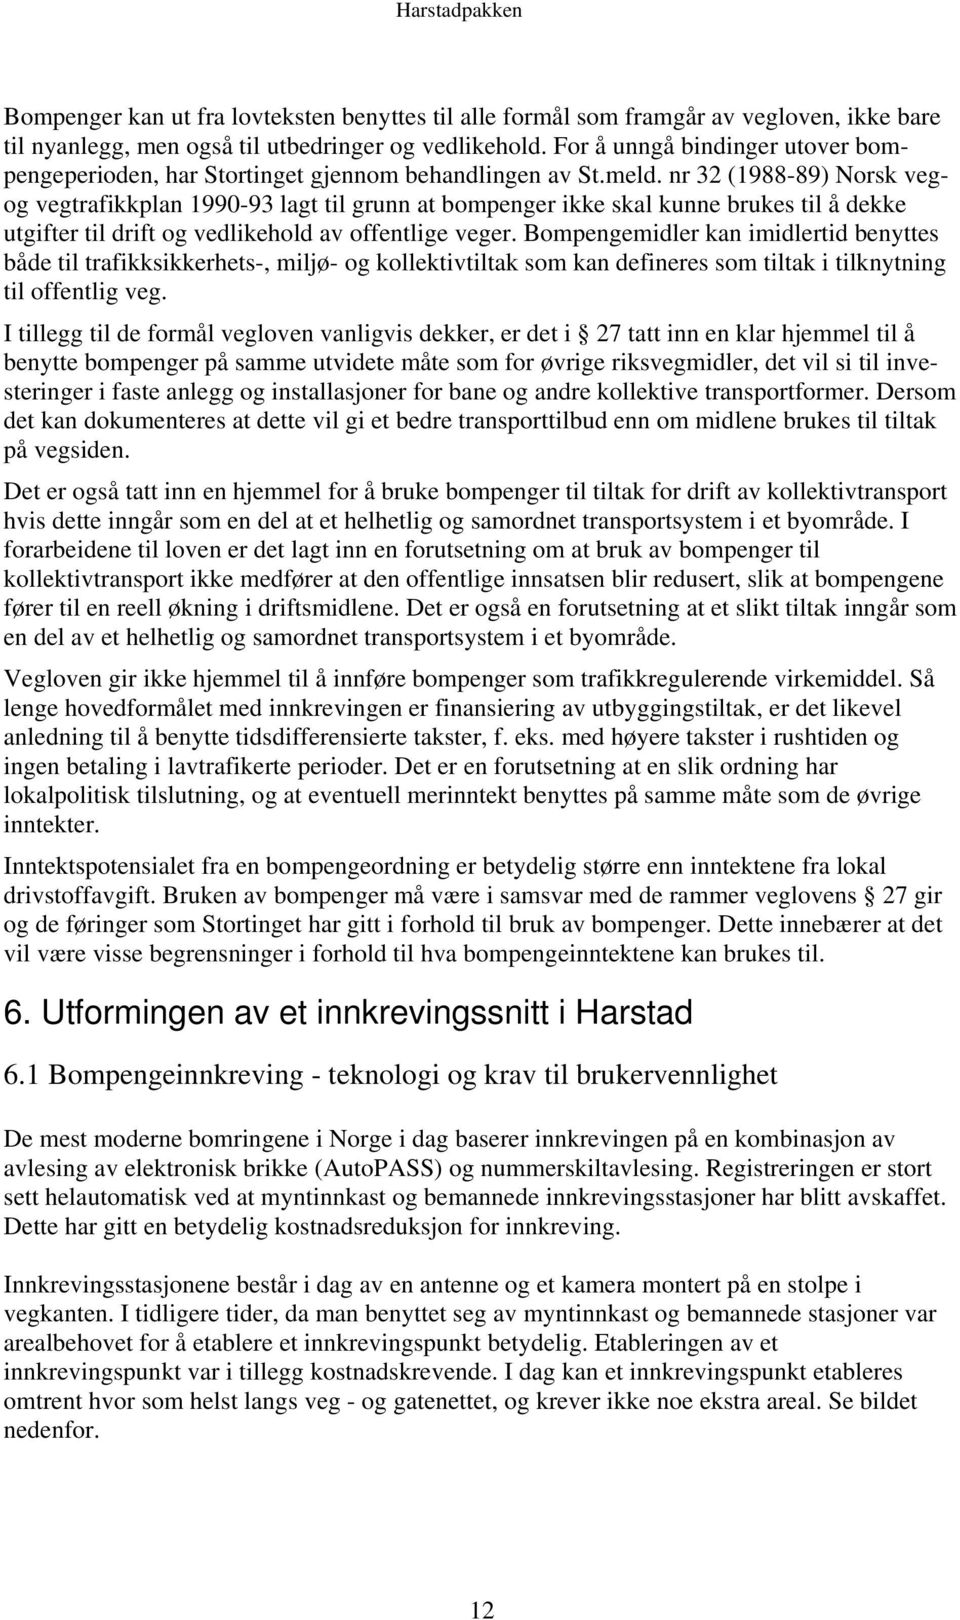 nr 32 (1988-89) Norsk vegog vegtrafikkplan 1990-93 lagt til grunn at bompenger ikke skal kunne brukes til å dekke utgifter til drift og vedlikehold av offentlige veger.